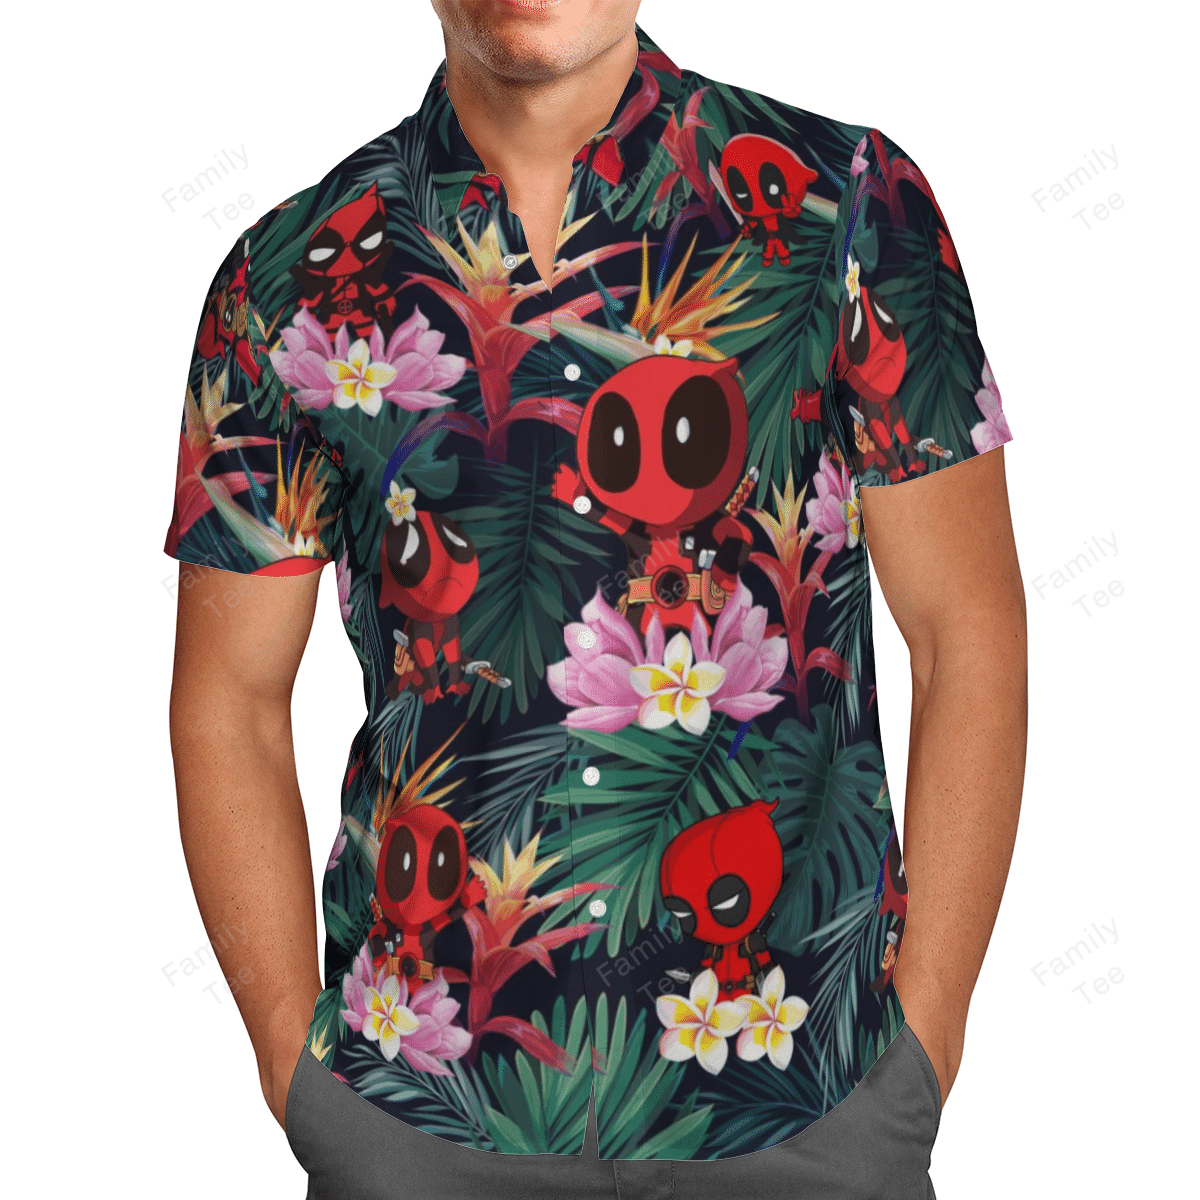 Deadpool Hawaiian shirt and short 1